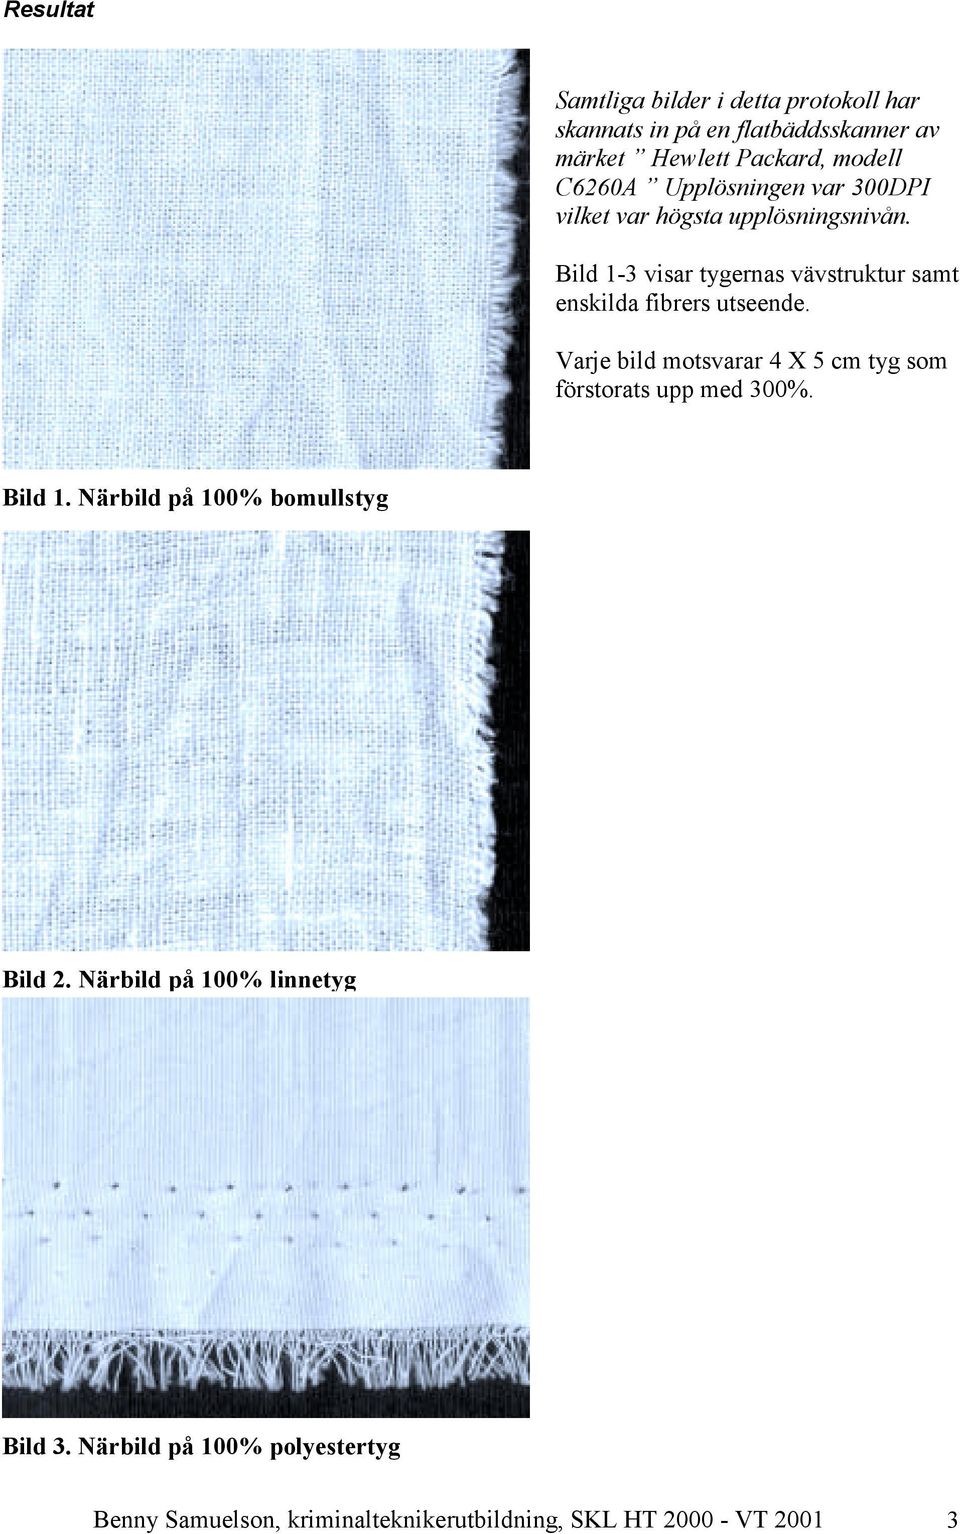 Bild 1-3 visar tygernas vävstruktur samt enskilda fibrers utseende.